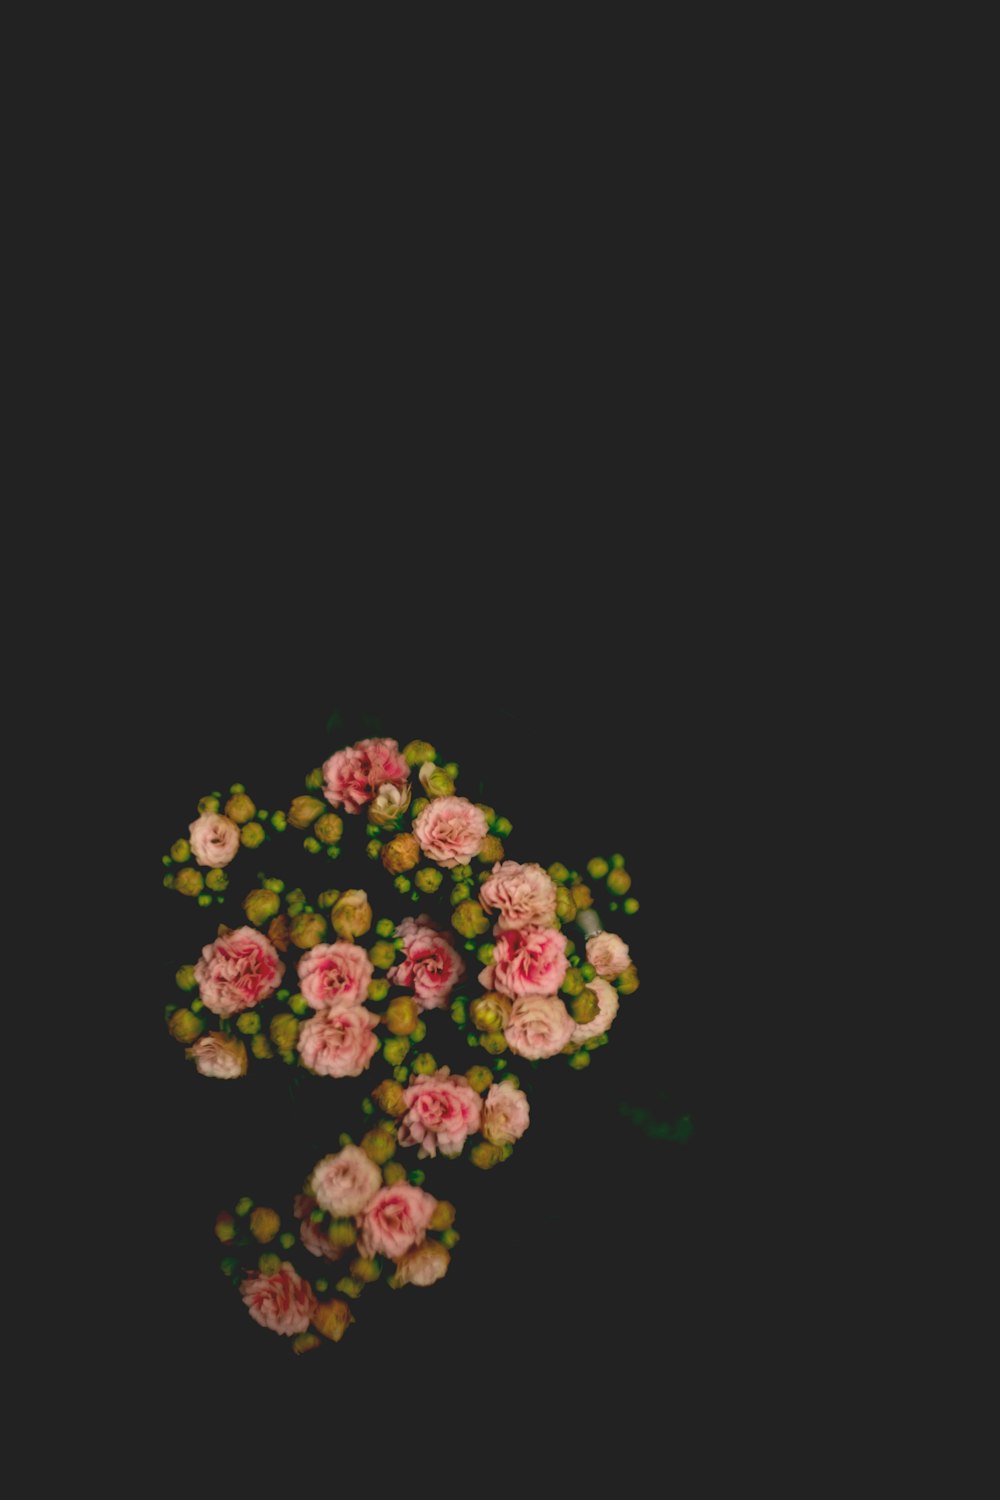 flores de pétalos rosados